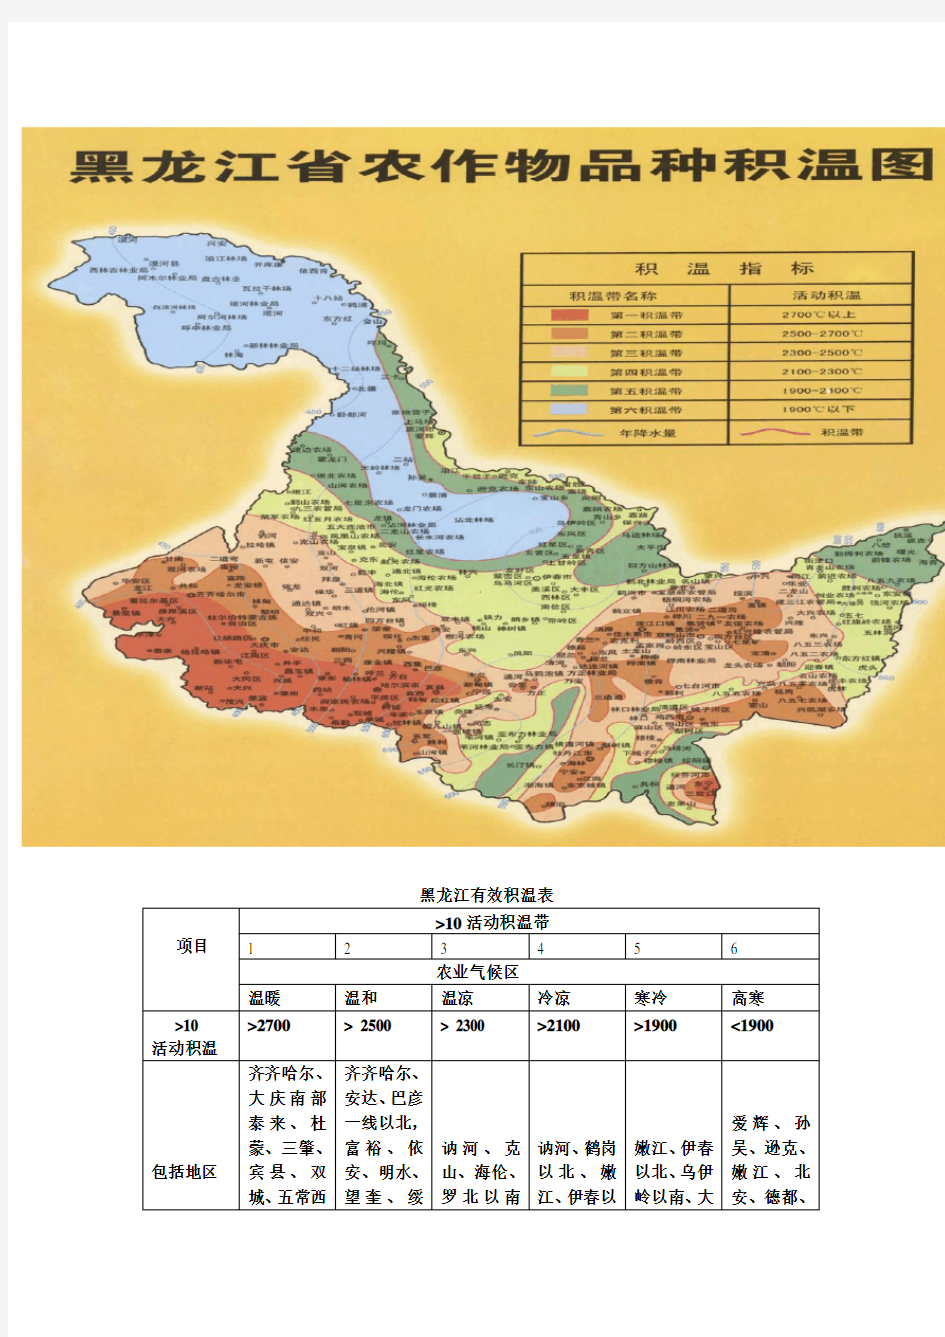 黑龙江有效积温图及各积温带地点名录